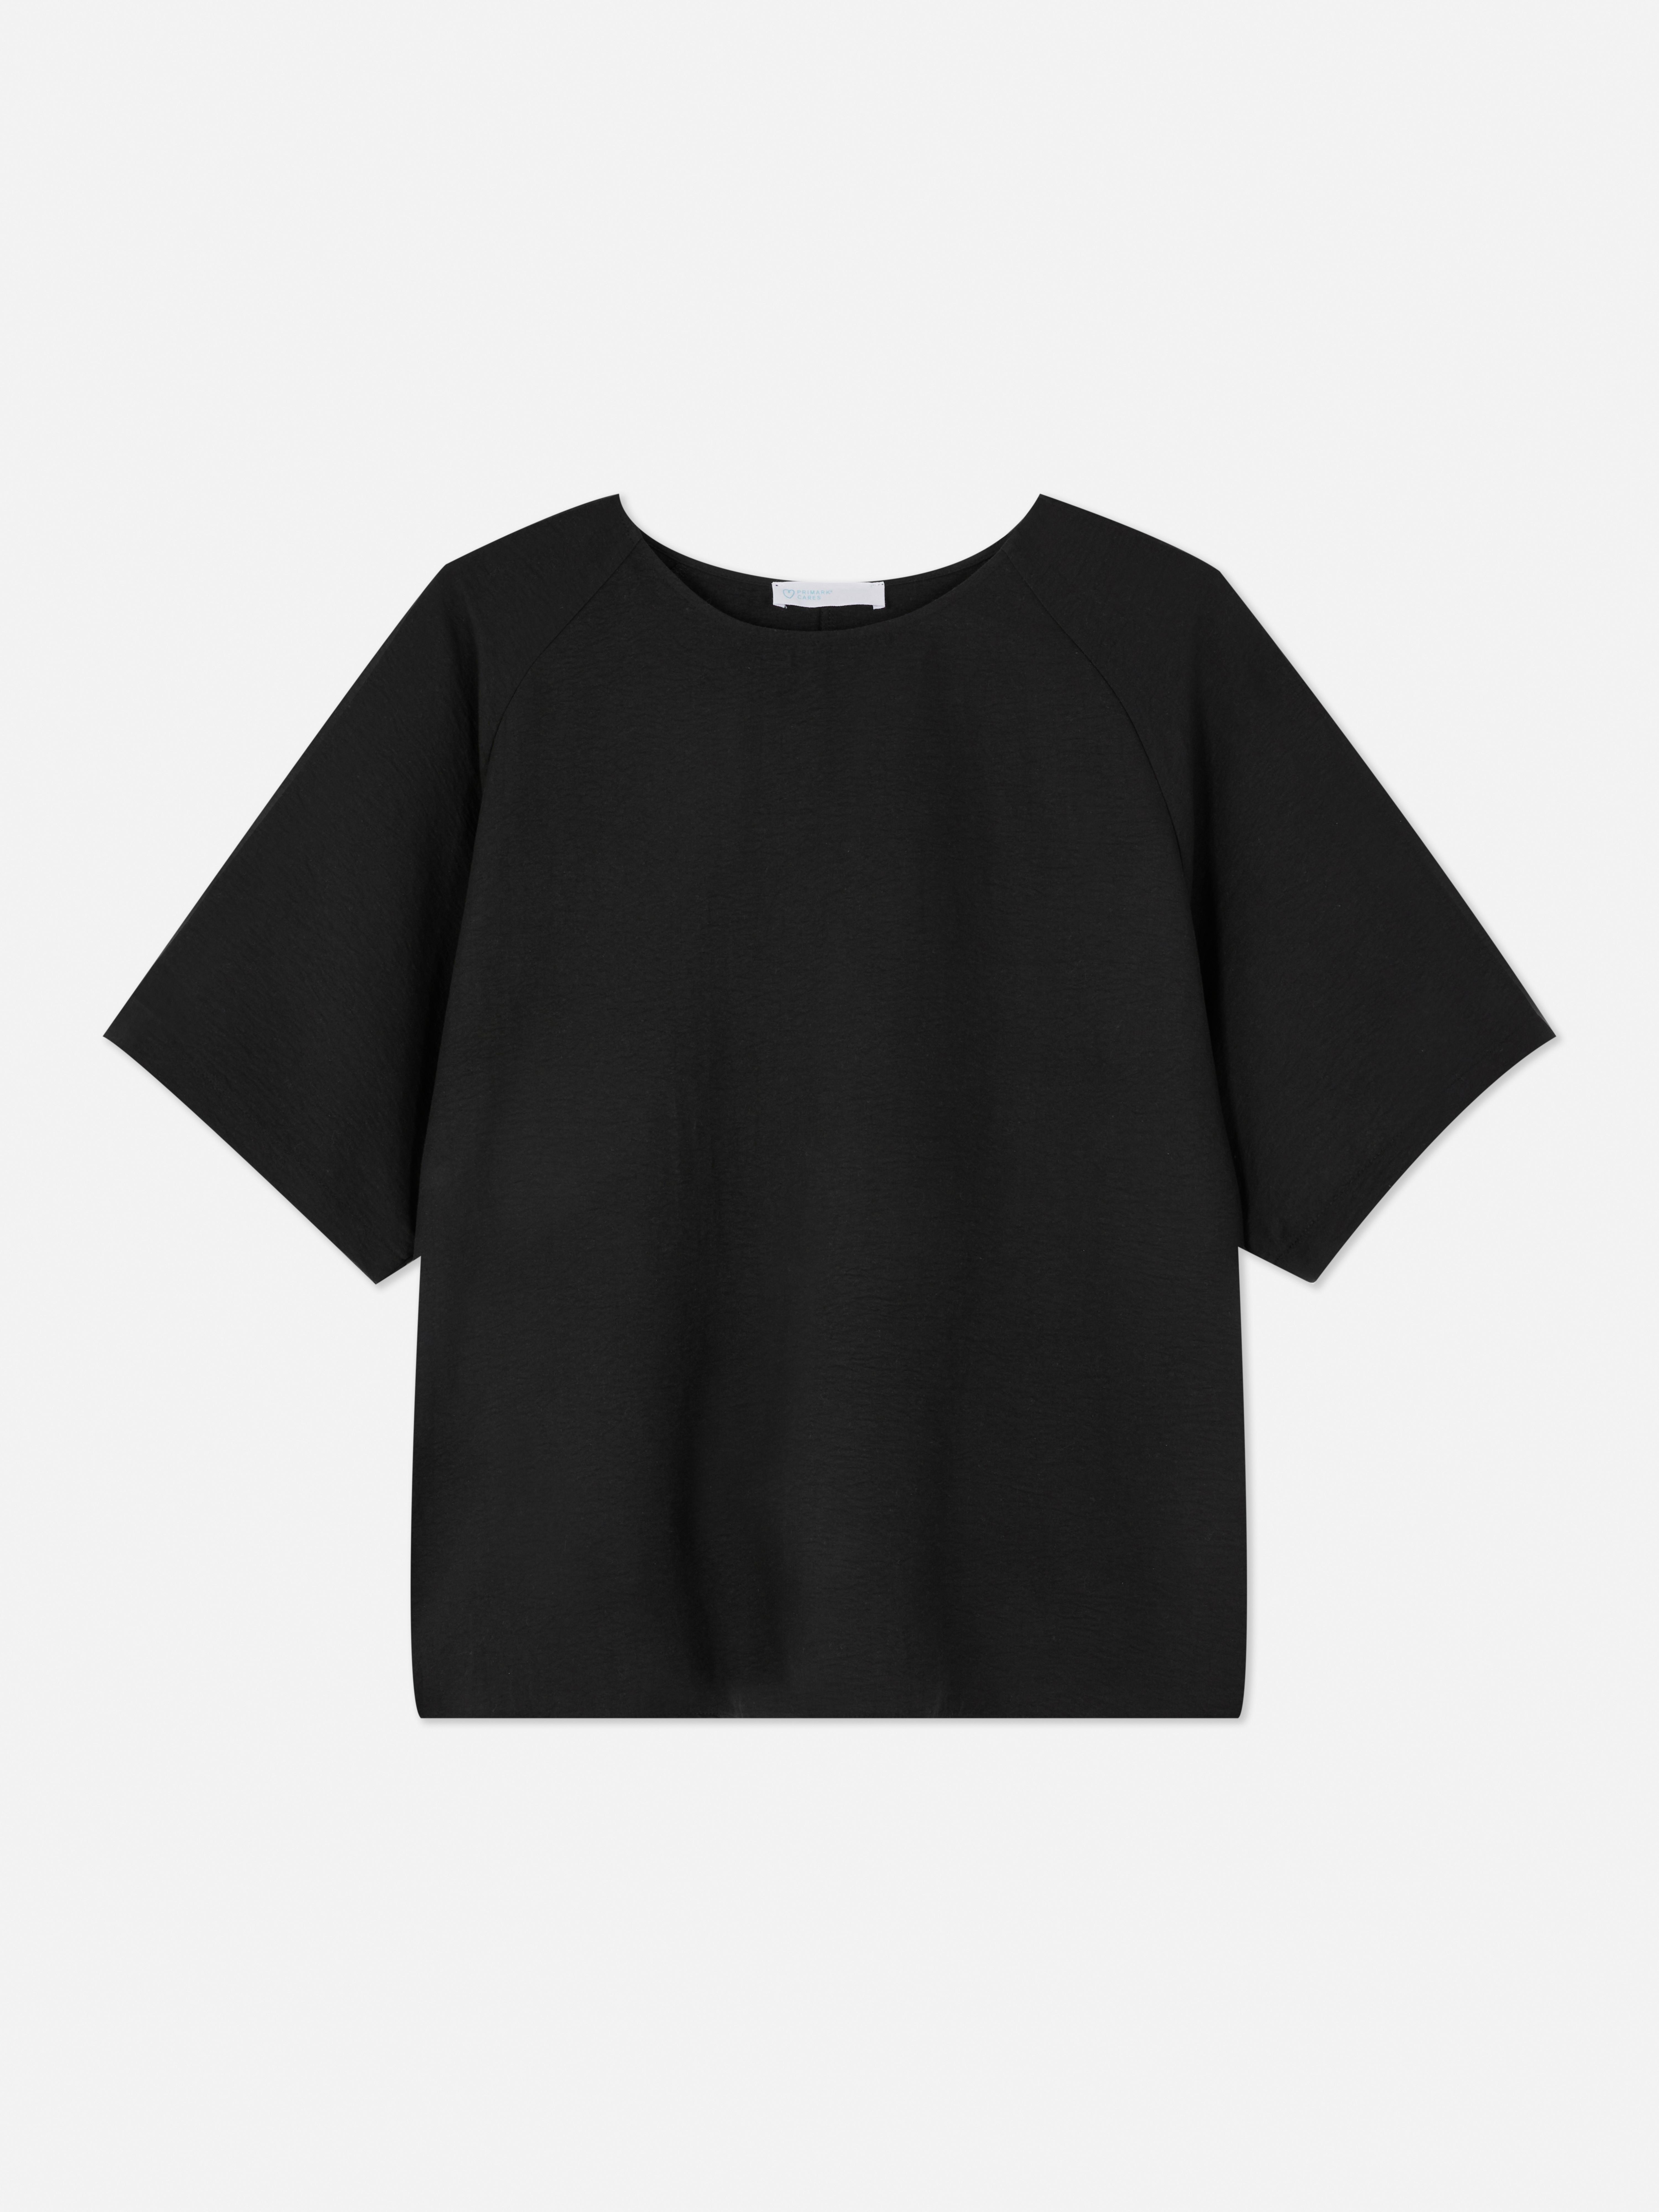 Camiseta de manga raglán | Tops de mujer | Ropa para mujer | Nuestra línea de moda femenina | Todos los productos Primark | Primark España